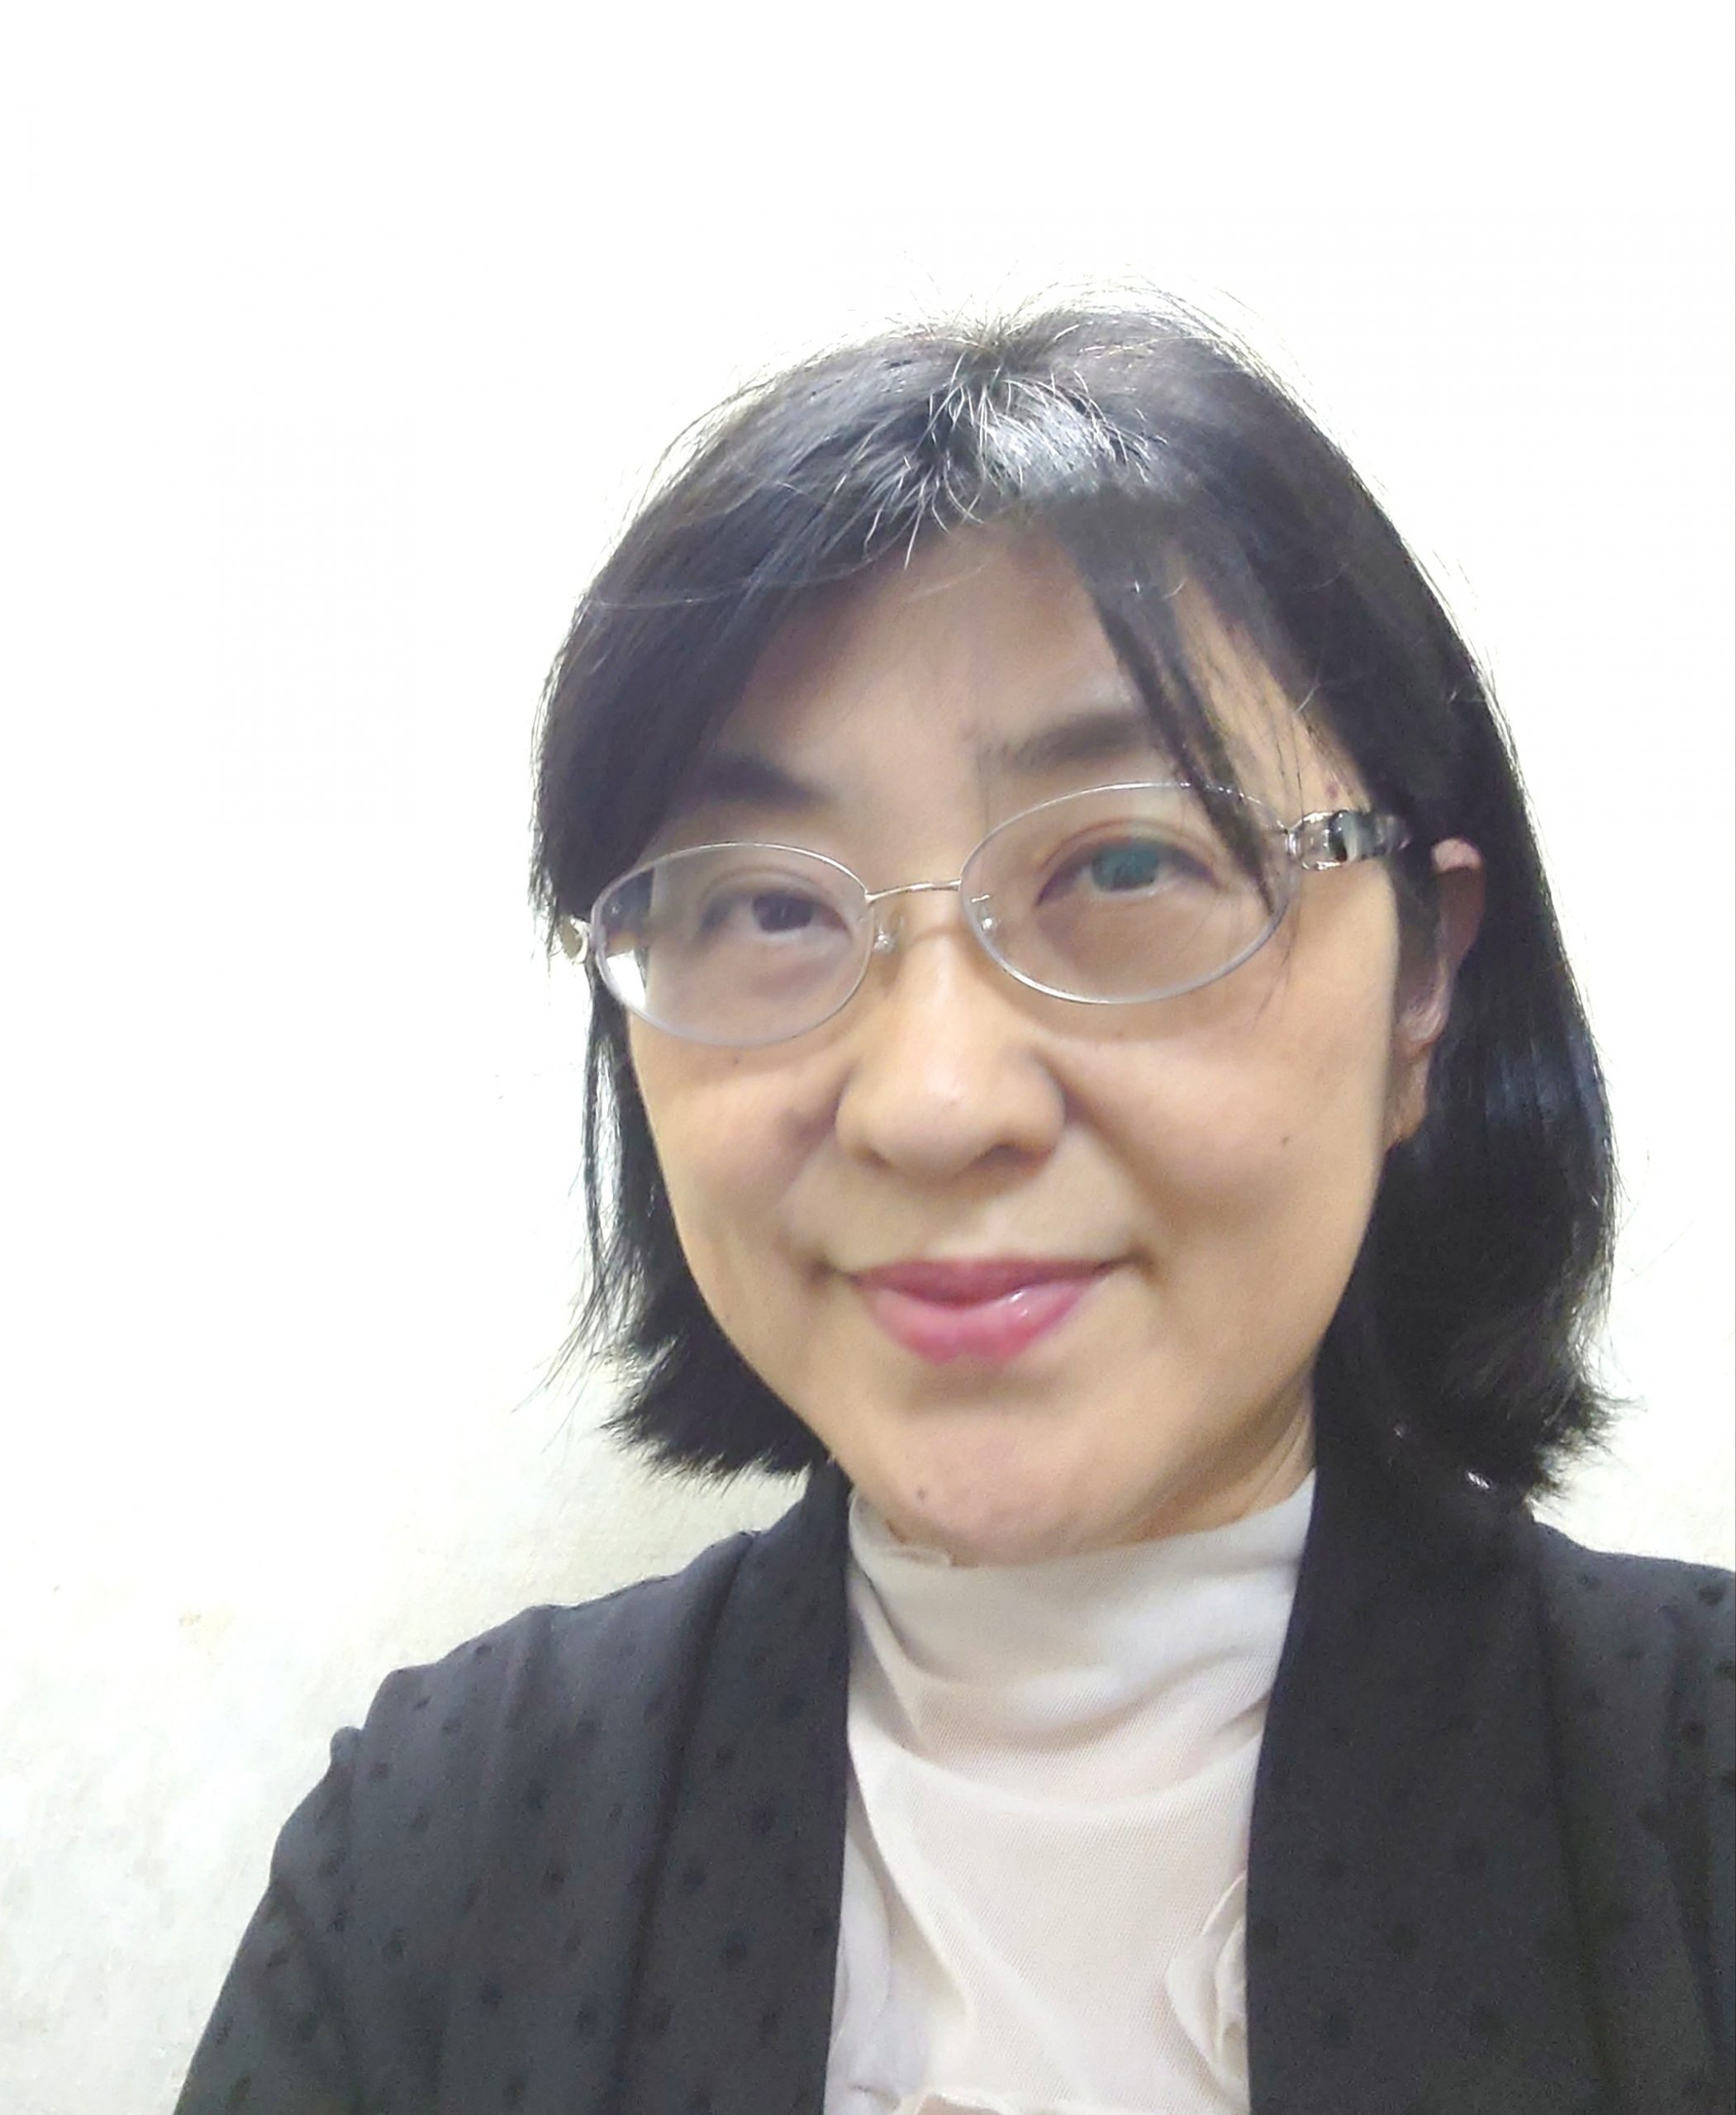 Jitf 大森喜久恵 中国語通訳者への道のり 日本会議通訳者協会